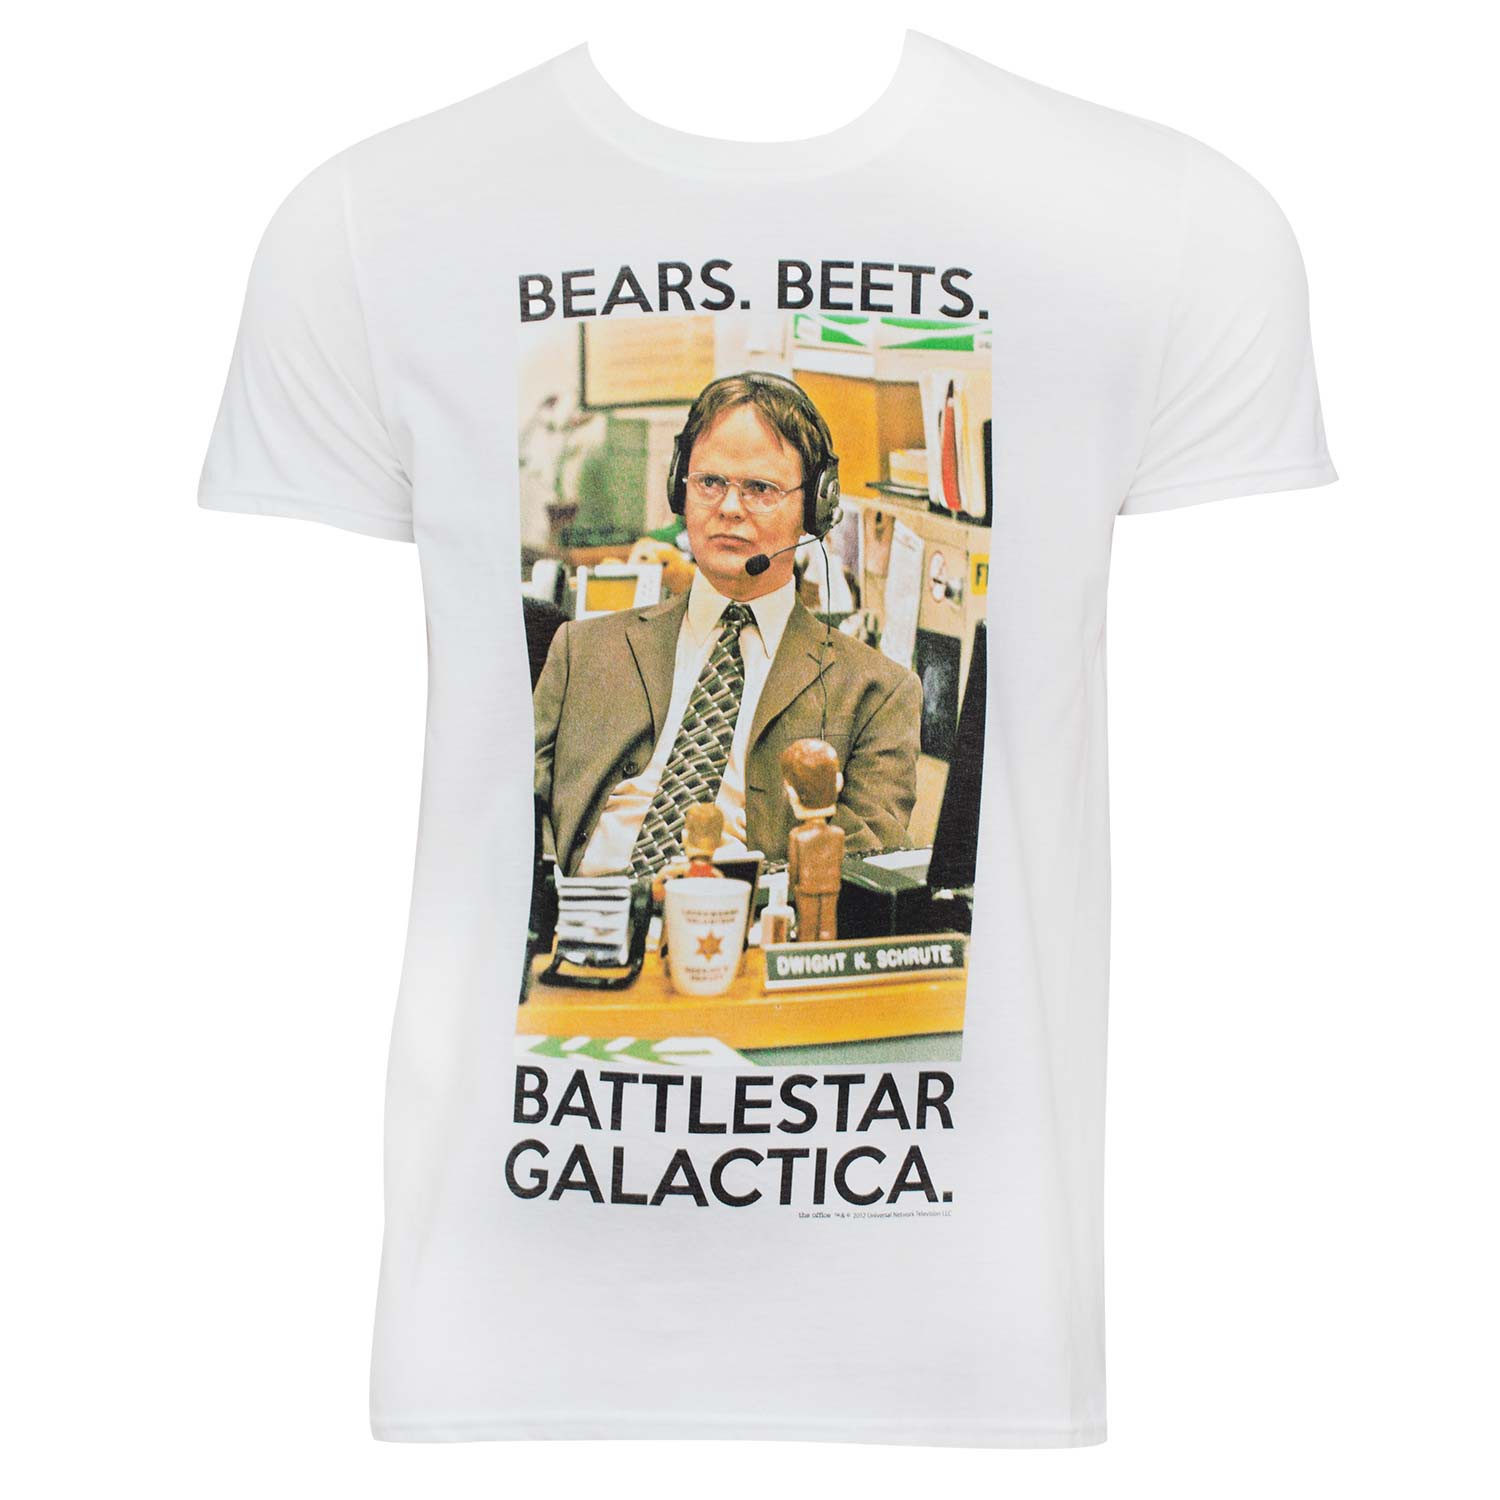 The Office Battlestar Galactica Tee Shirt